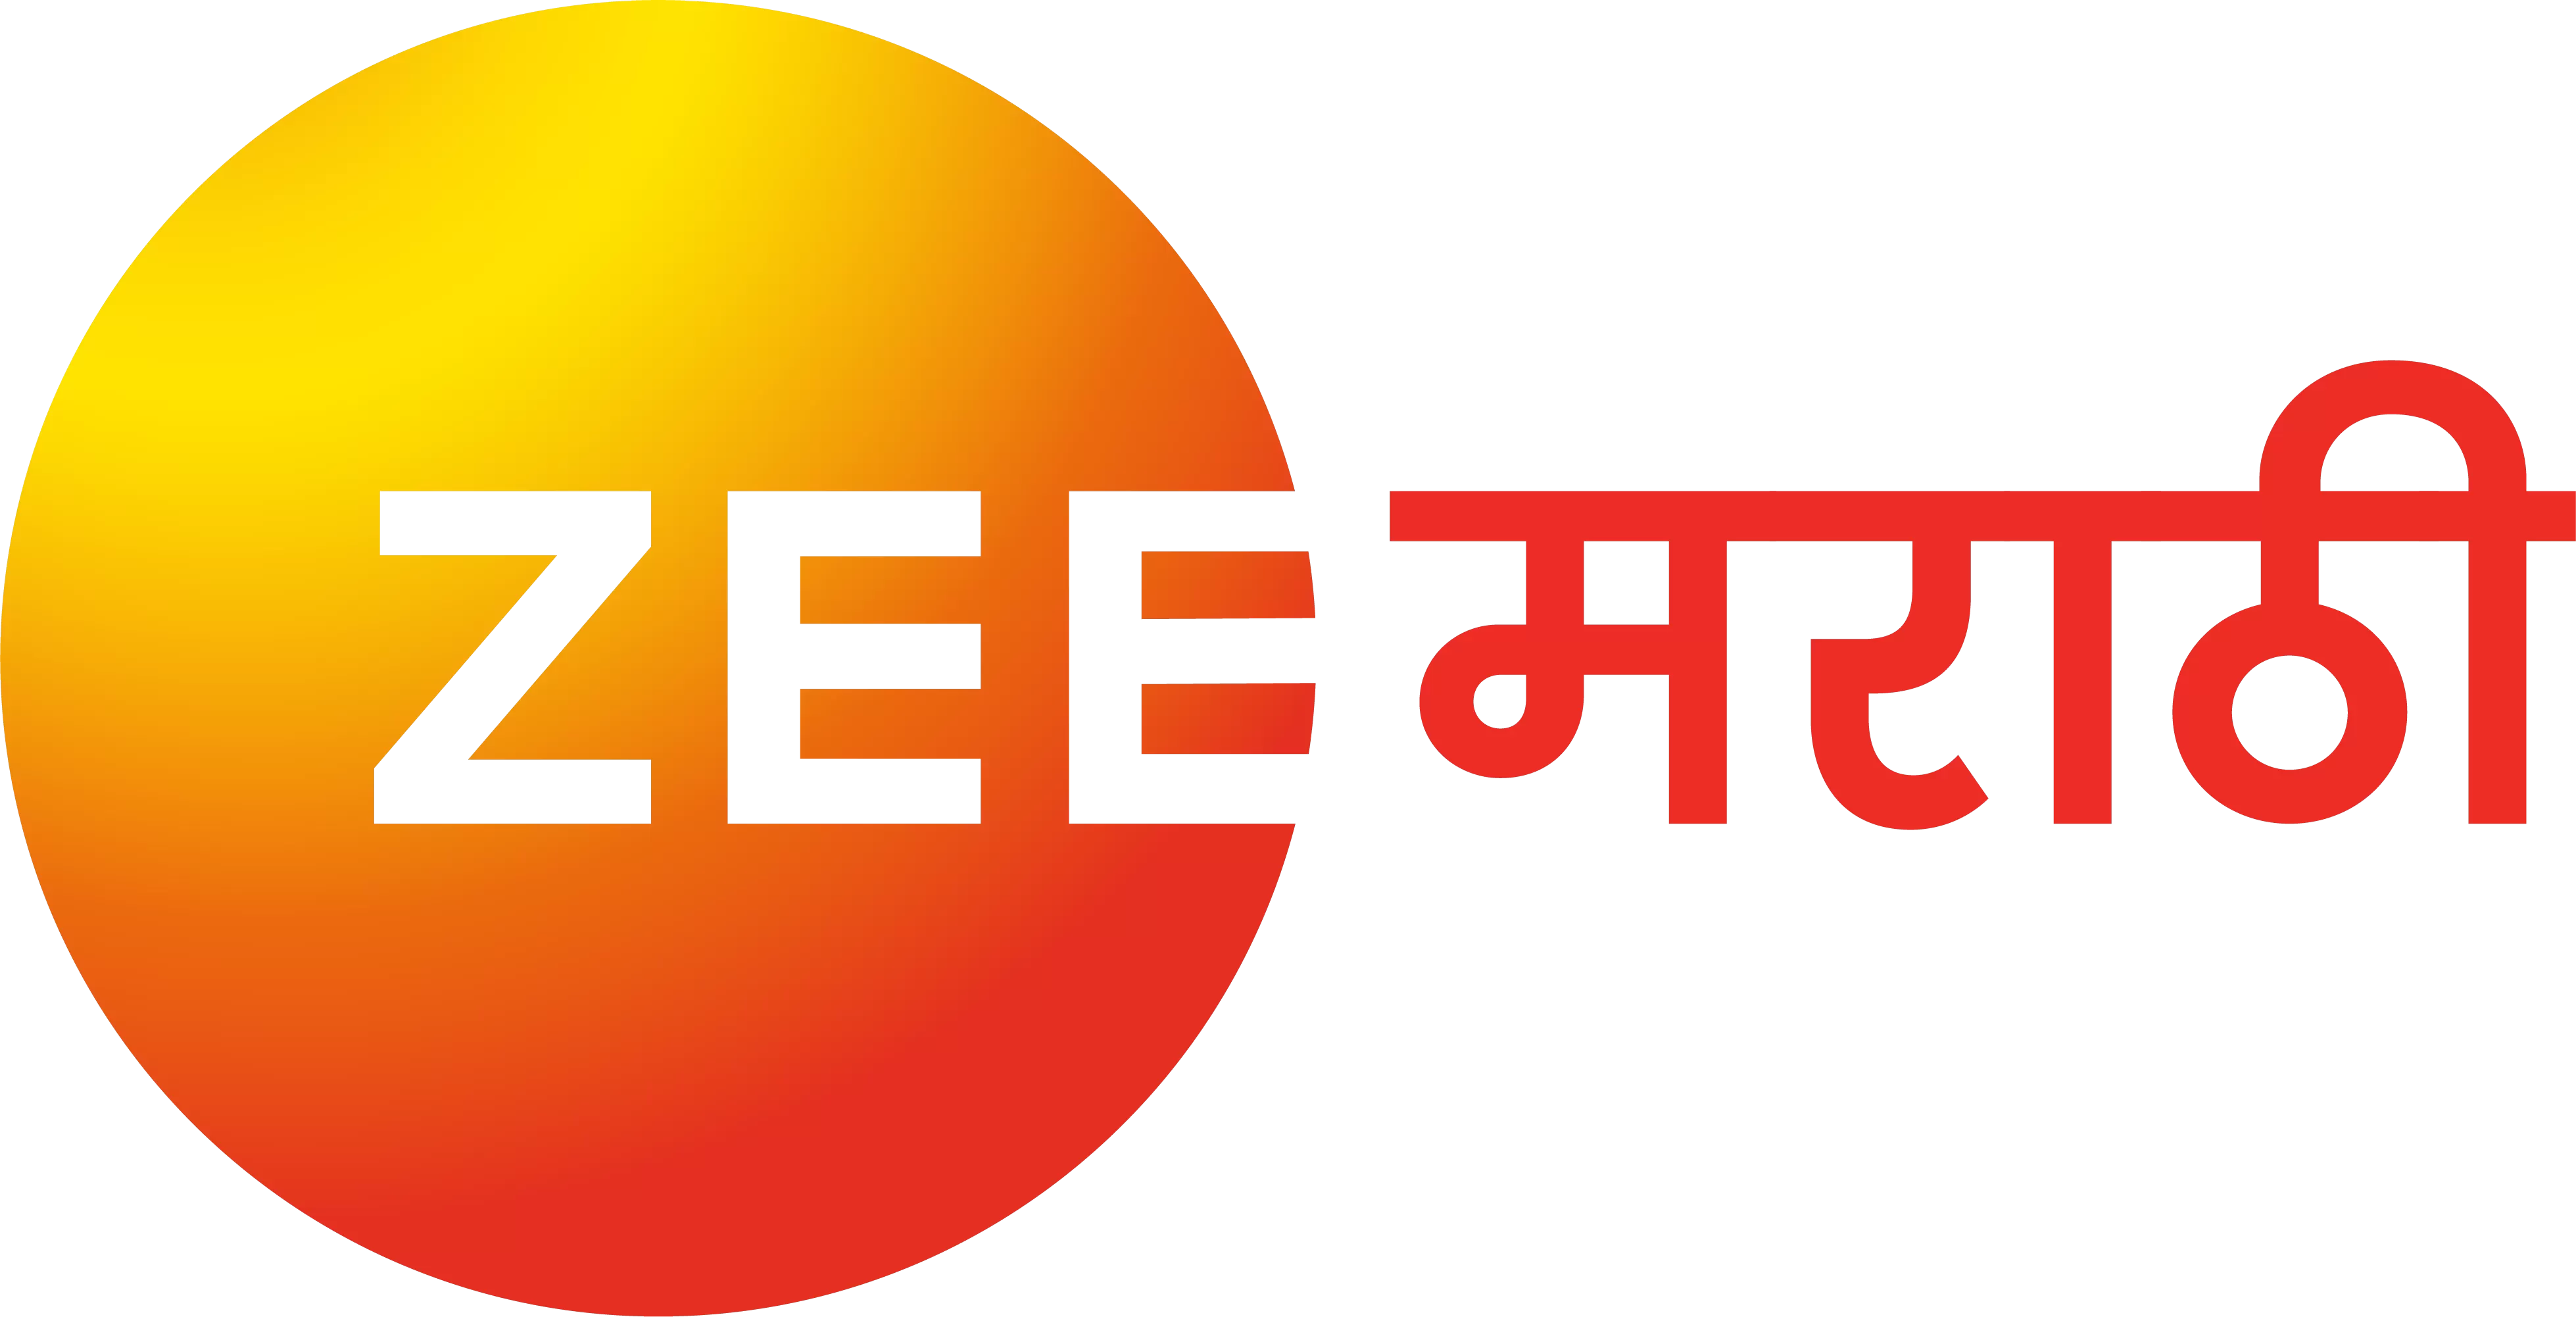 Television Media Zee Marathi Advertising in India